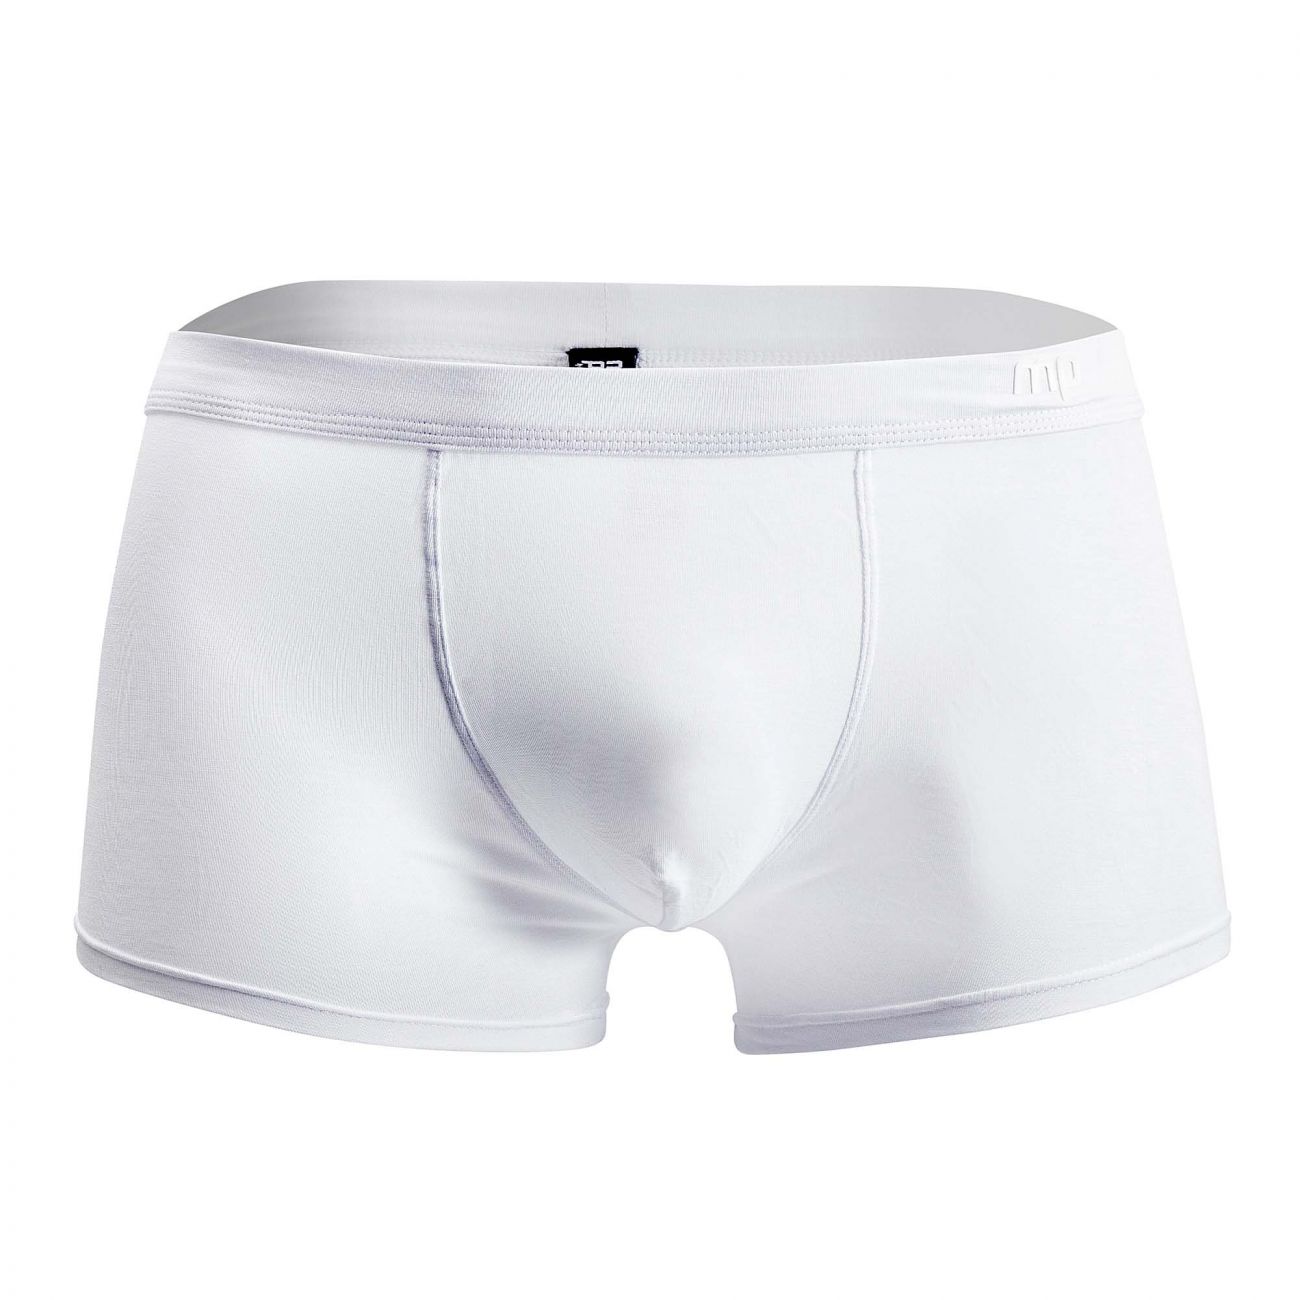 Mens Underwear: Male Power 150-257 Pure Comfort Wonder Short | eBay